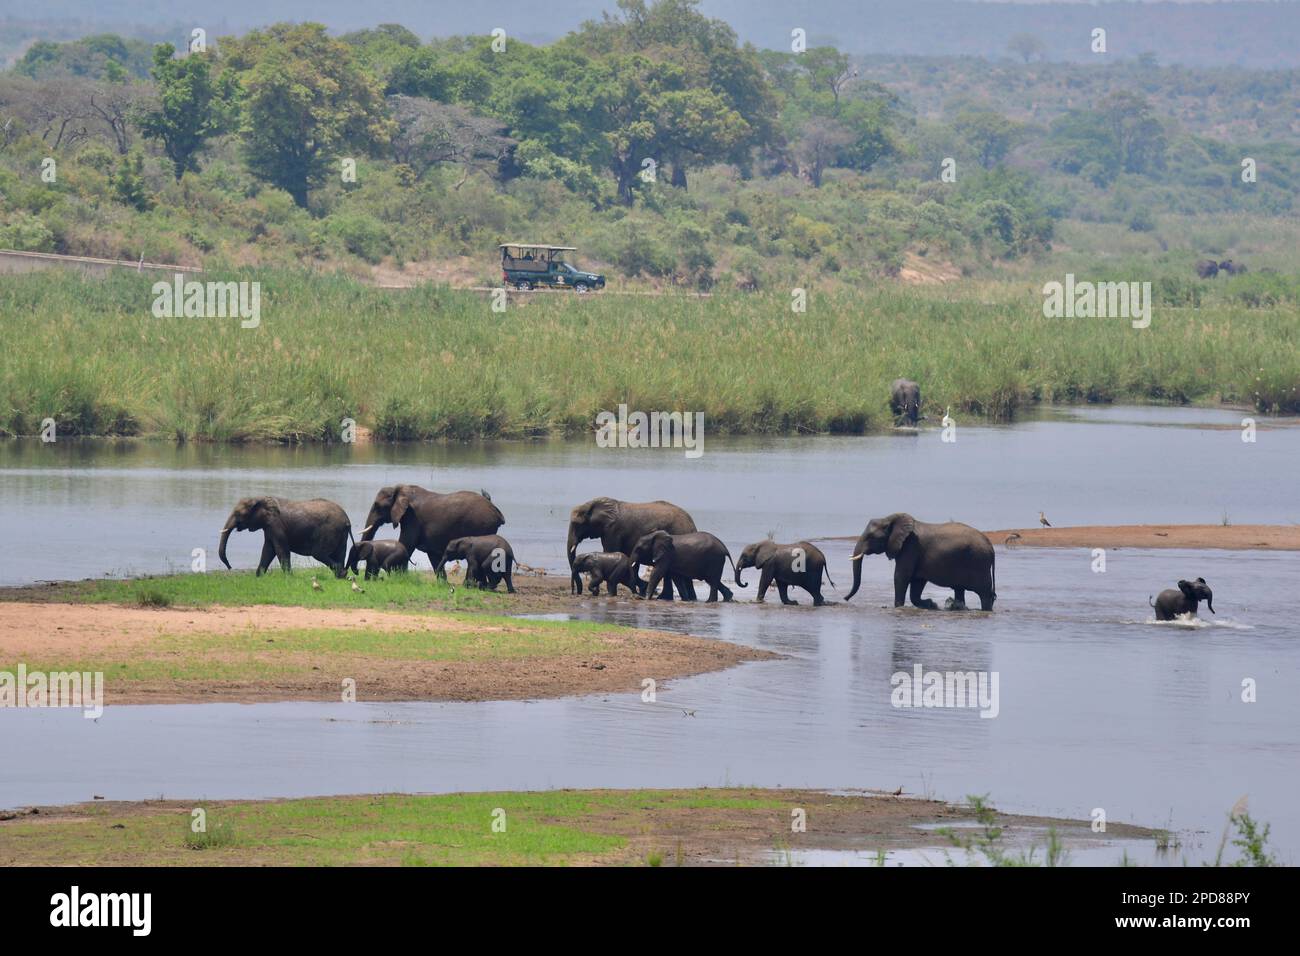 Allevamento di elefanti che attraversa il fiume Sabie nel parco nazionale di Kruger, Sudafrica Foto Stock